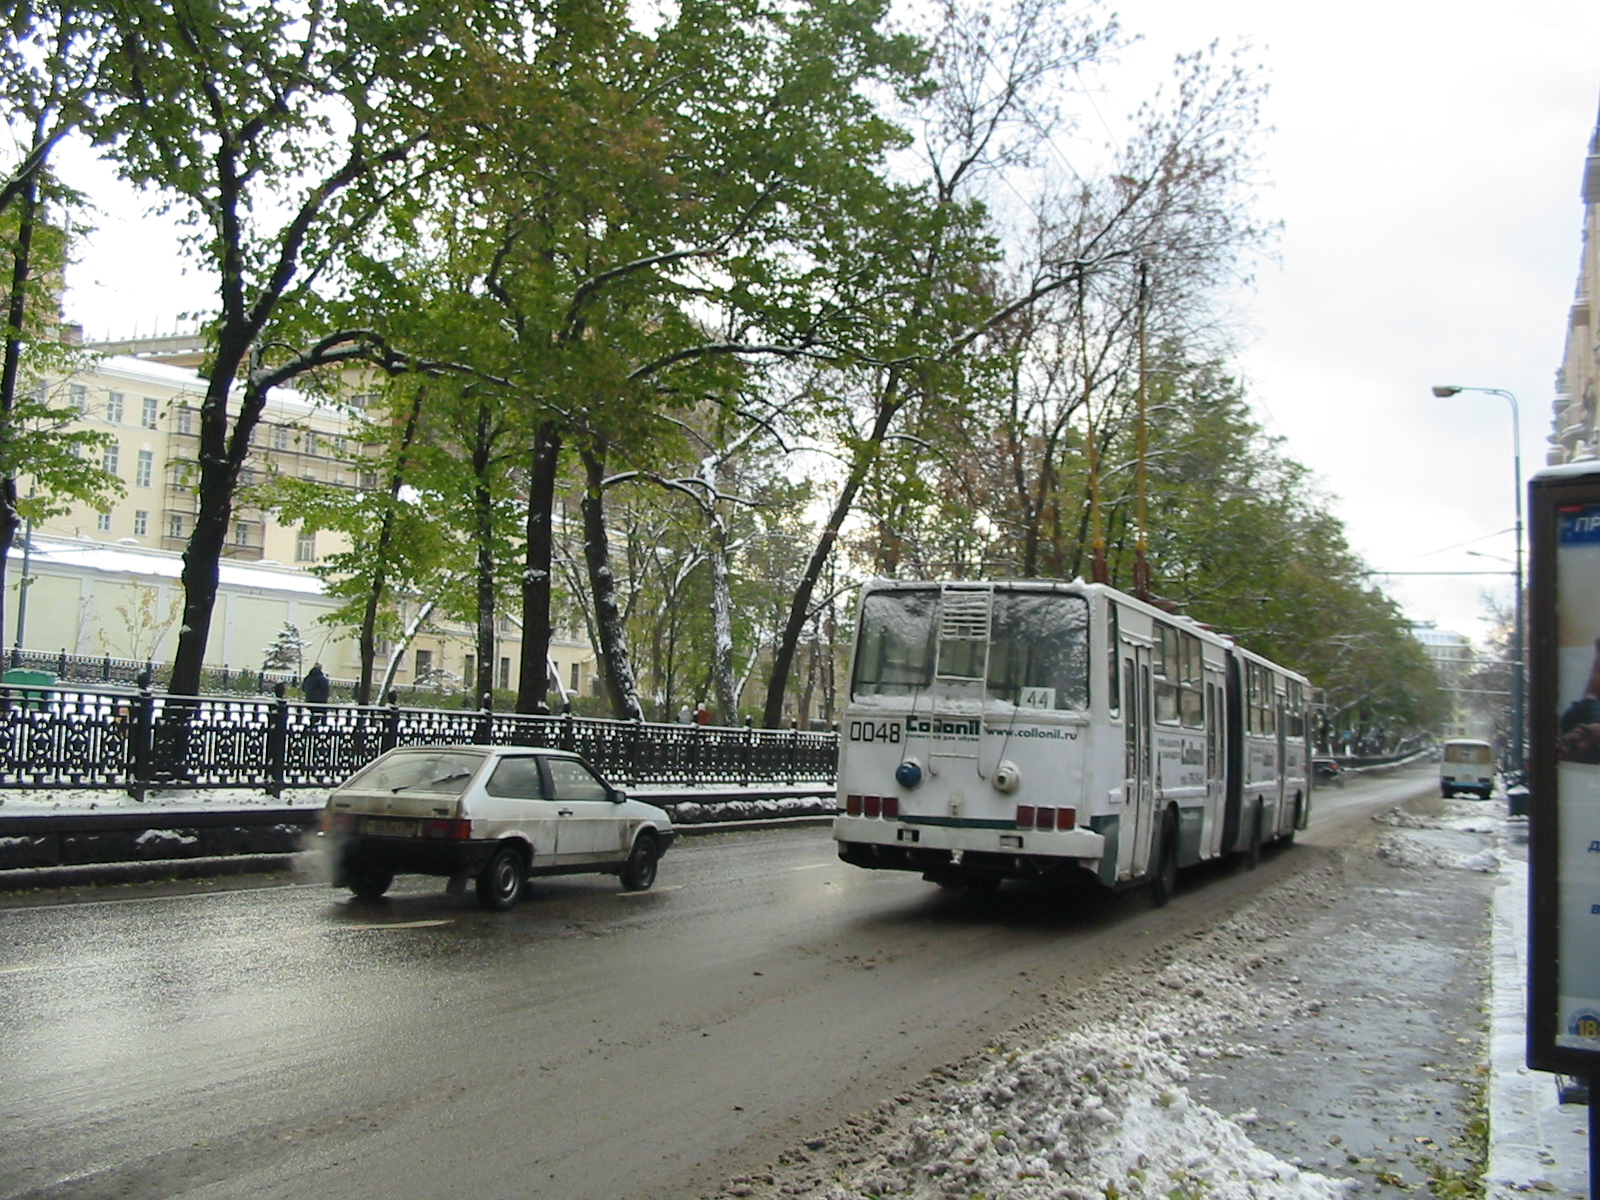 Троллейбус СВАРЗ-Икарус 0048